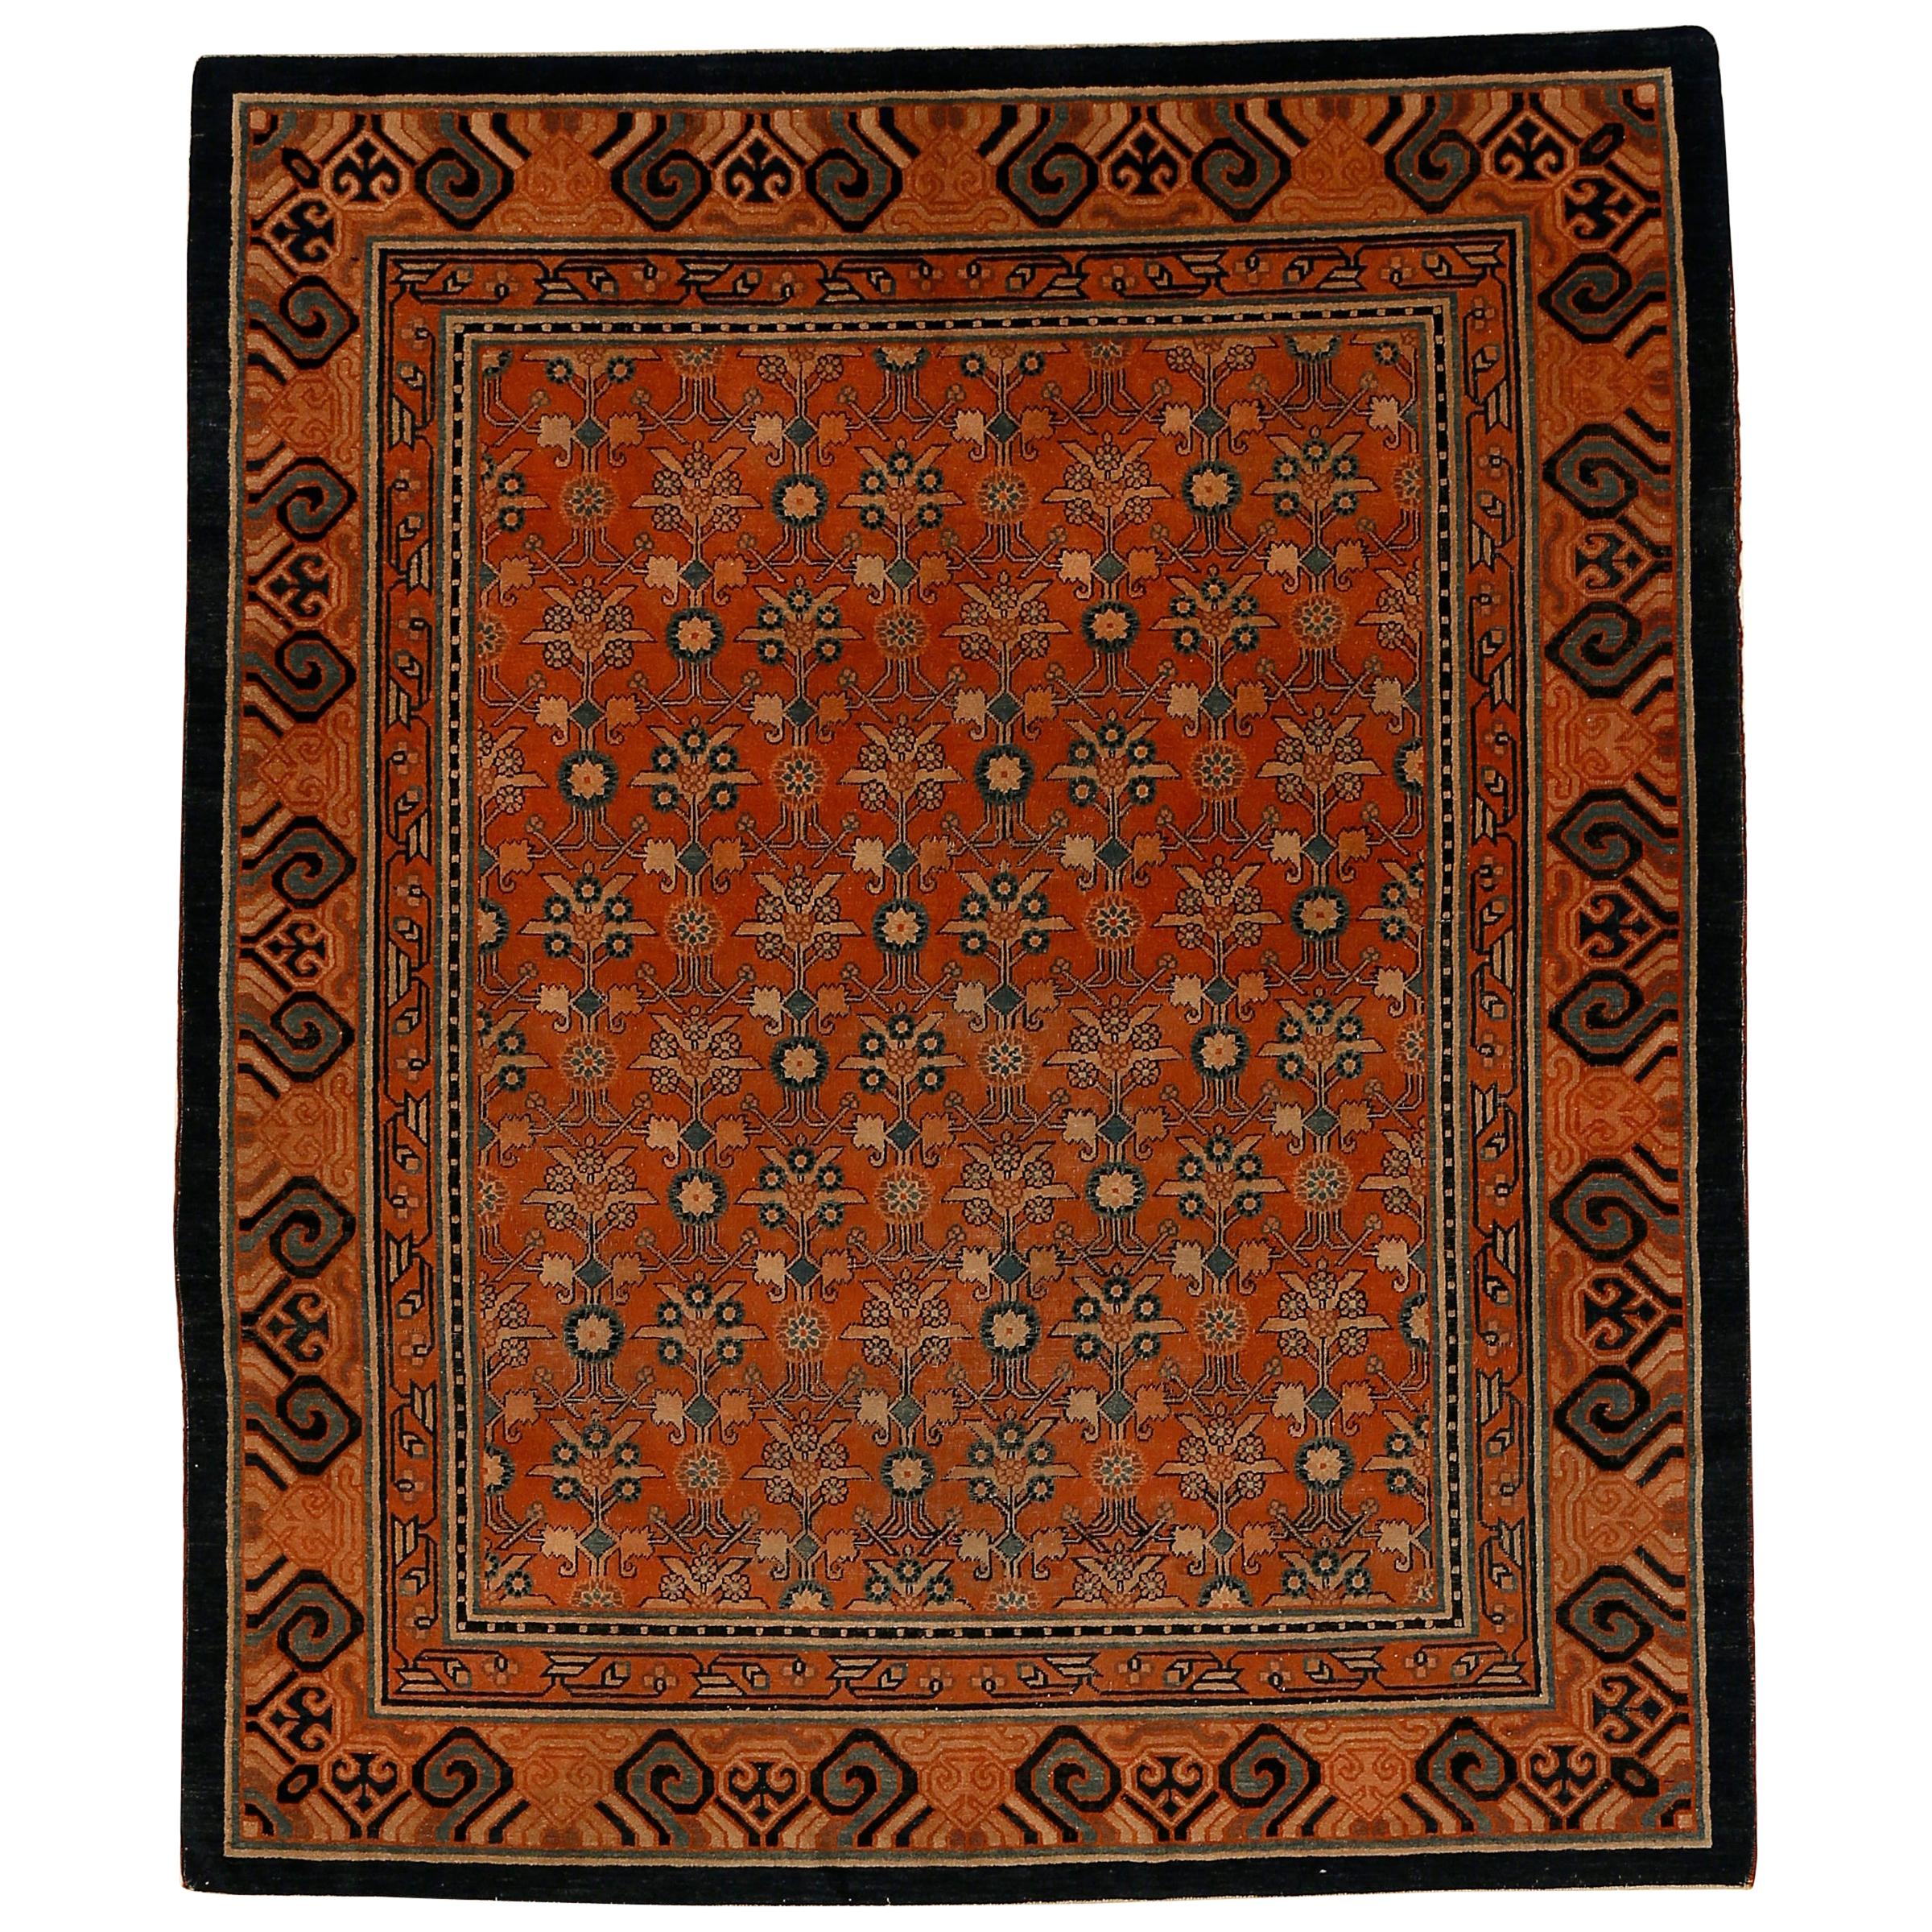 Seltener und ungewöhnlicher antiker Kashgar-Teppich mit Mughal-Muster